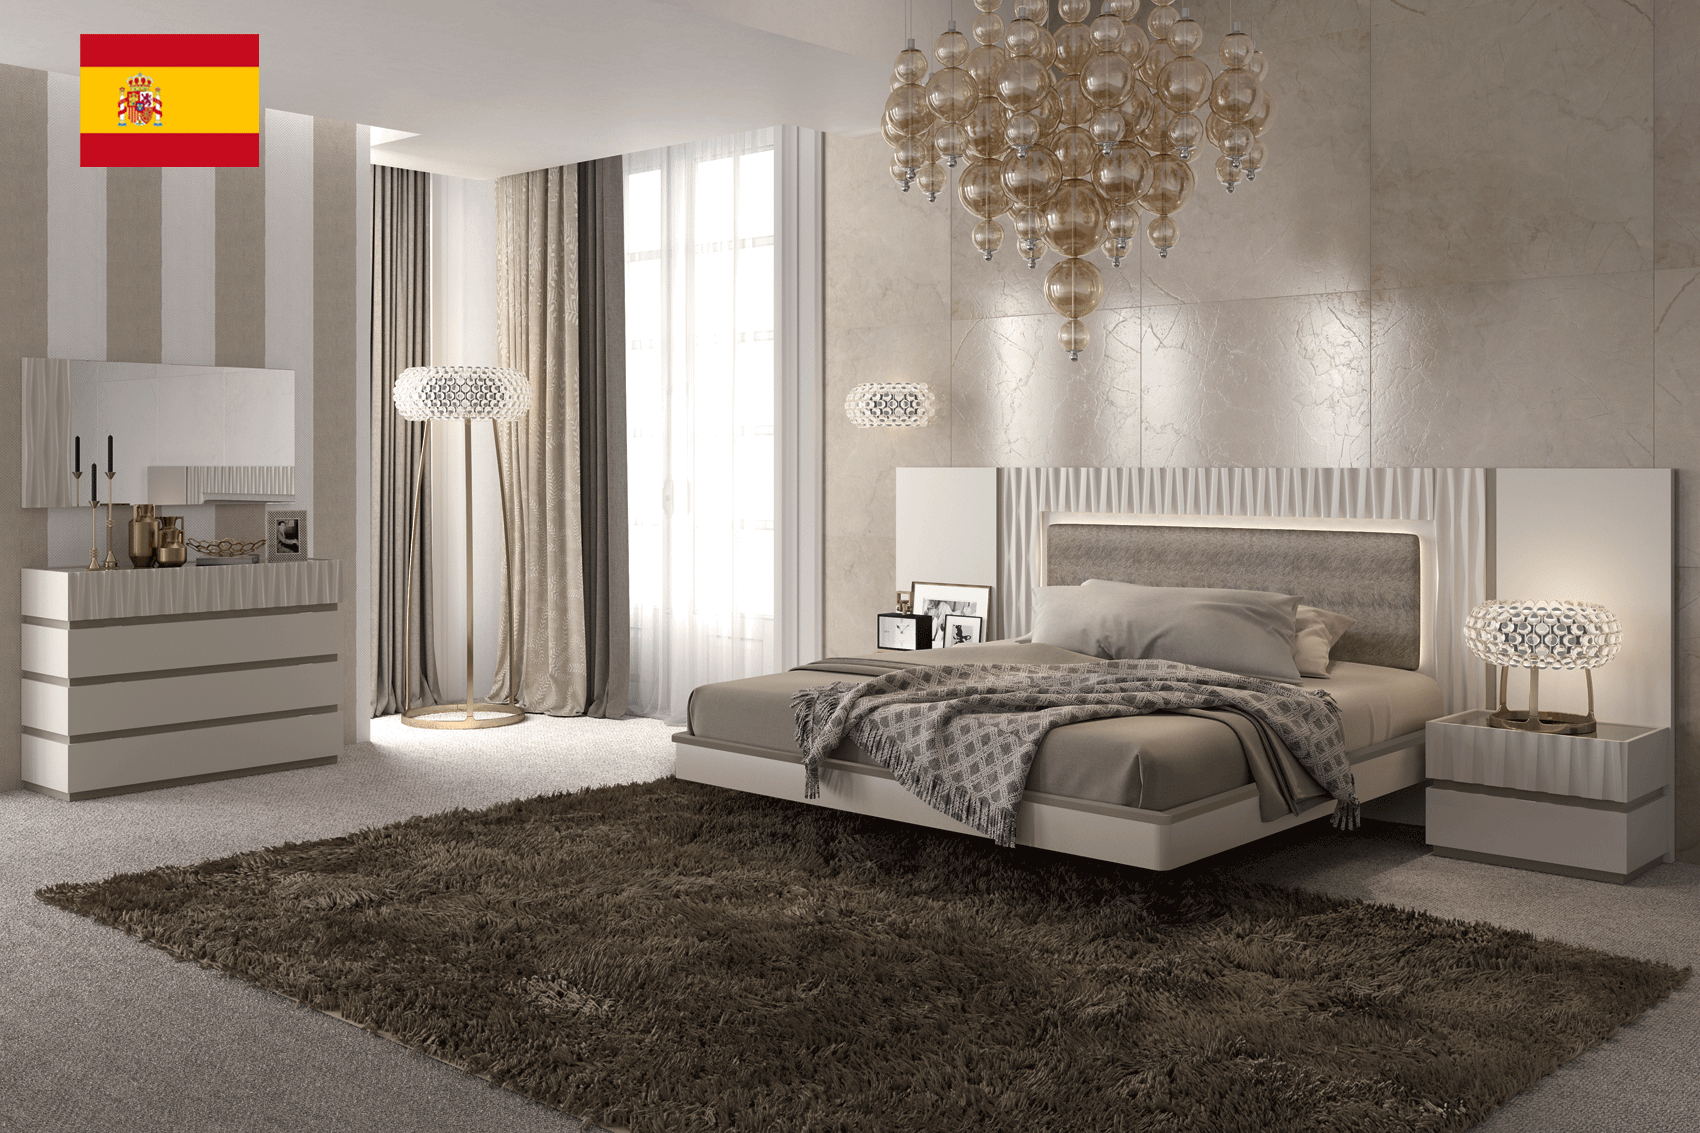 Bedroom Furniture Nightstands Marina Taupe Bedroom